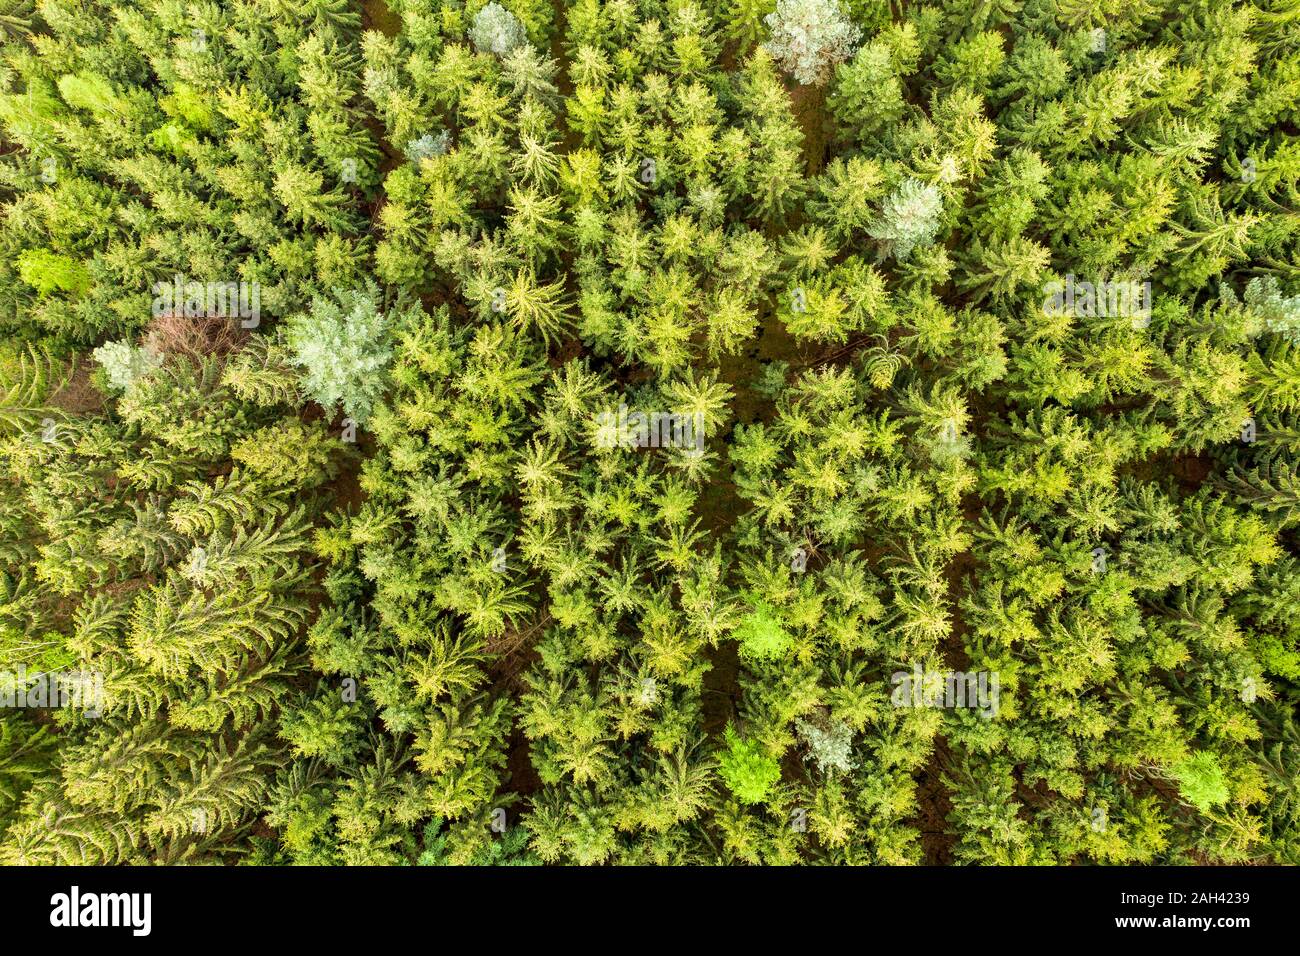 Alemania, Hesse, vista aérea de verde exuberante bosque mixto en las montañas de Odenwald Foto de stock